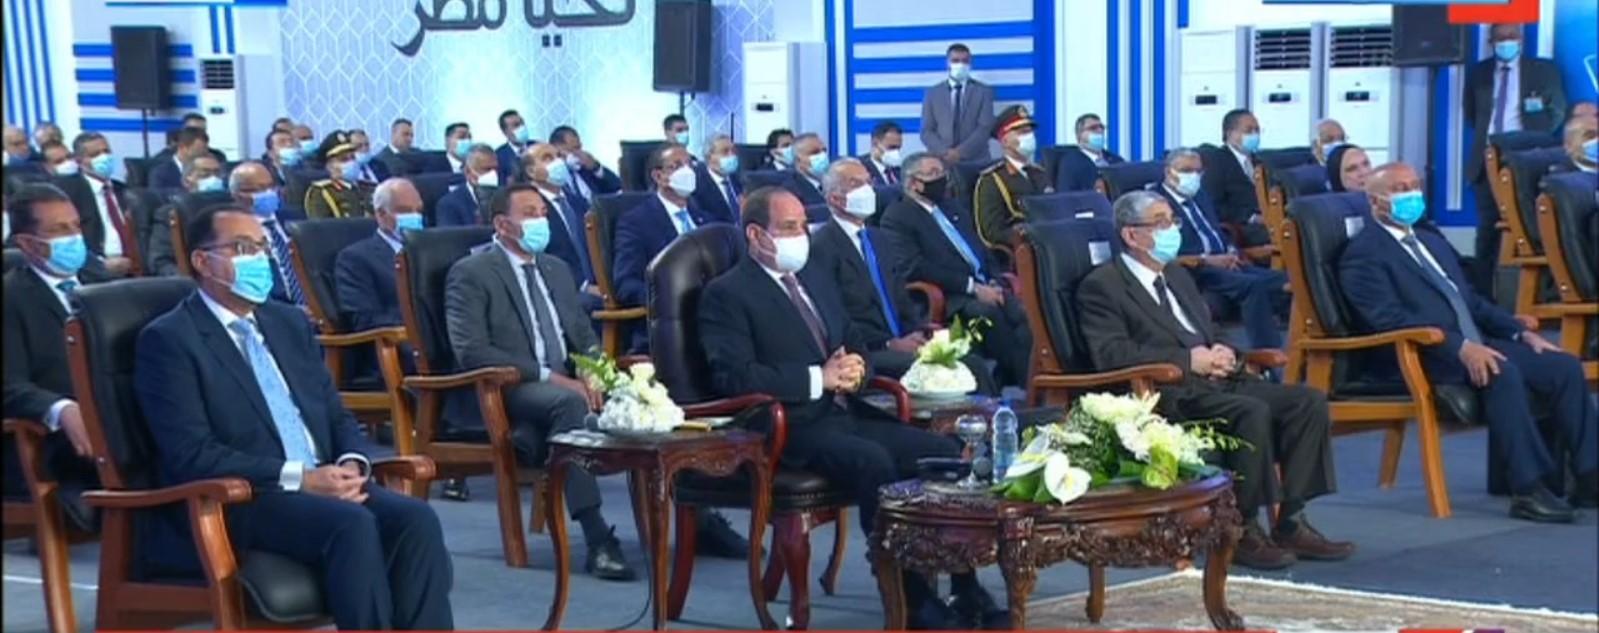 رئيس الجمهورية يشهد افتتاح عددا من المشروعات القومية الجديدة بمحافظة المنيا عبر الفيديو كونفرنس